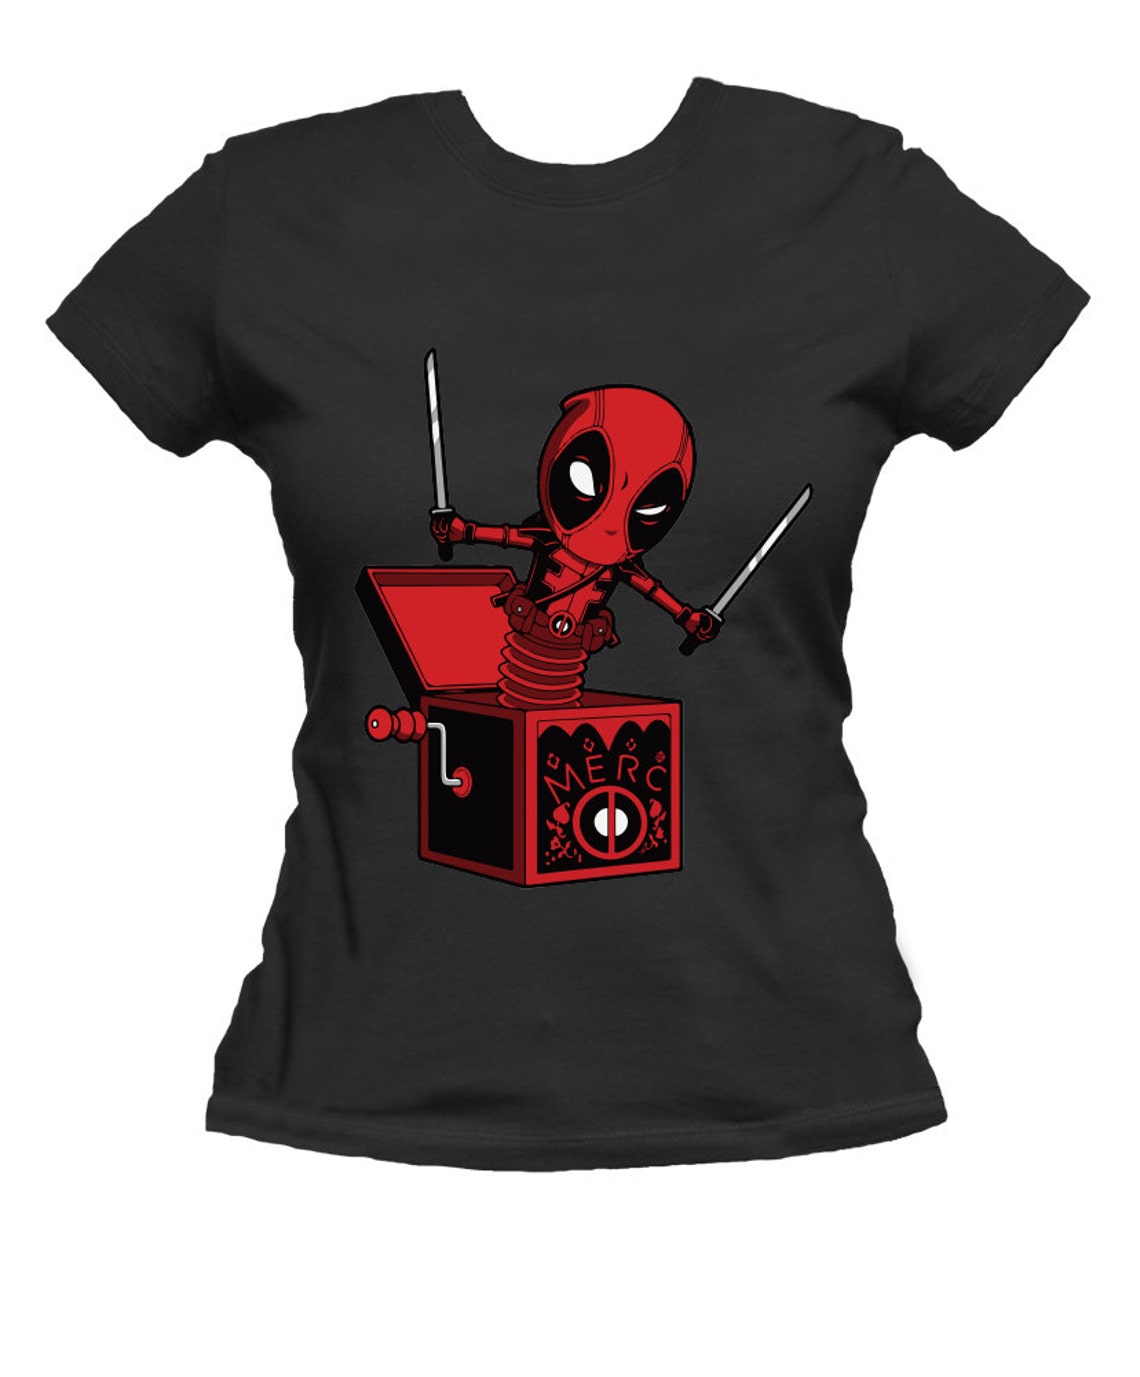 Deadpool T-shirt for Women Black Cotton Short Sleeve | Etsy